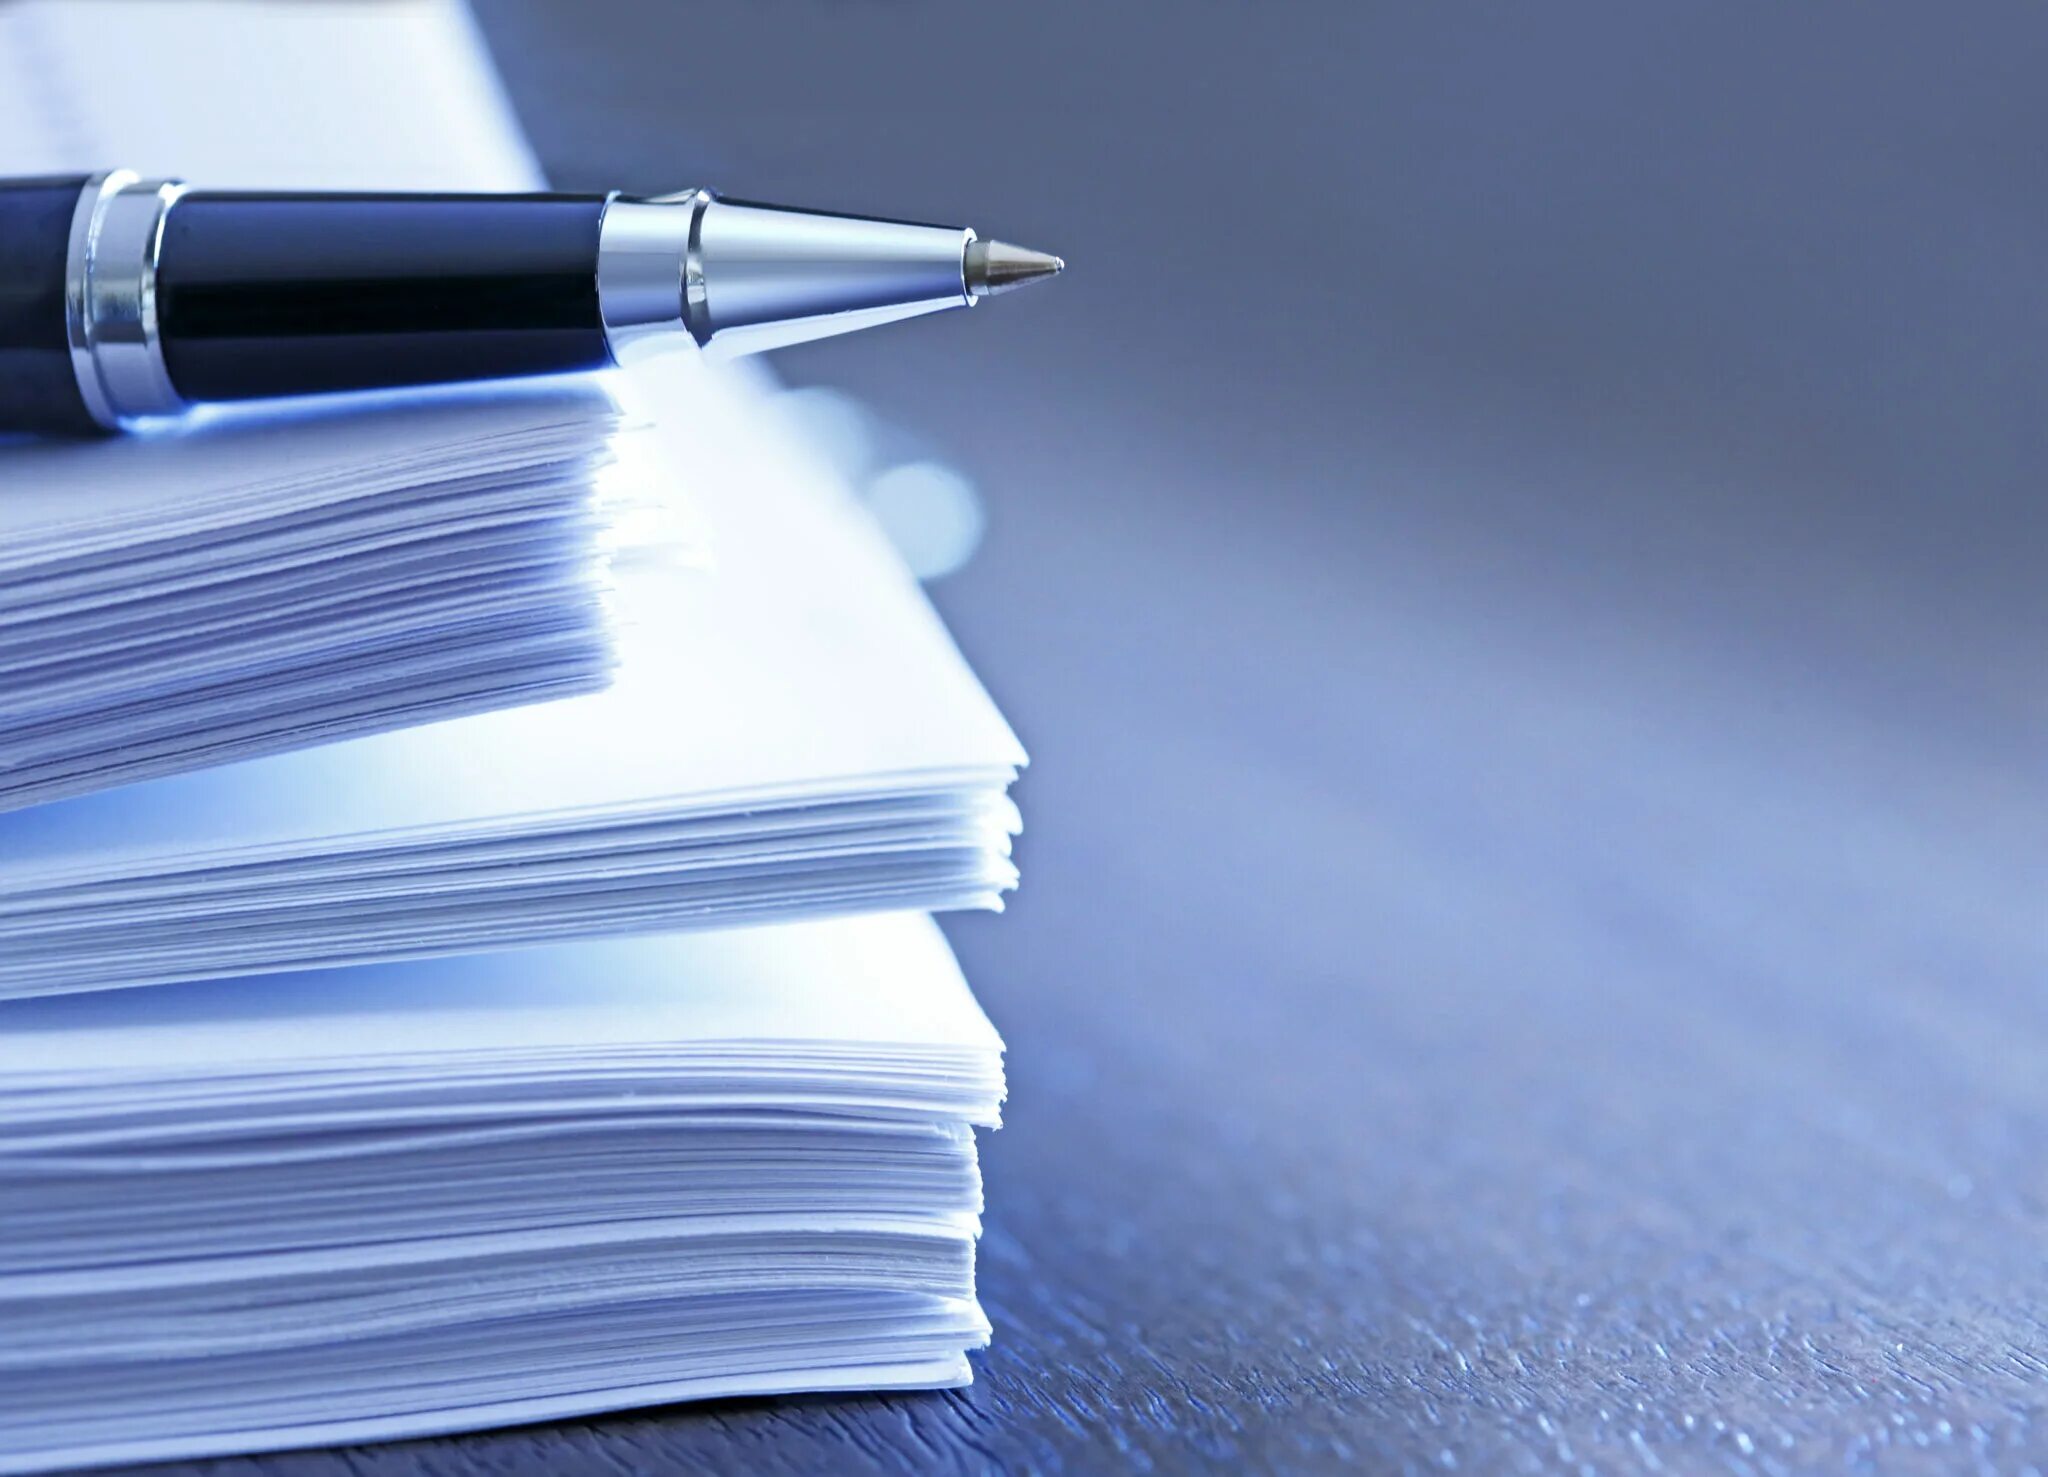 Новые знания документы. Фон для документа. Документы и ручка. Юридический документ. Ручка и бумага.